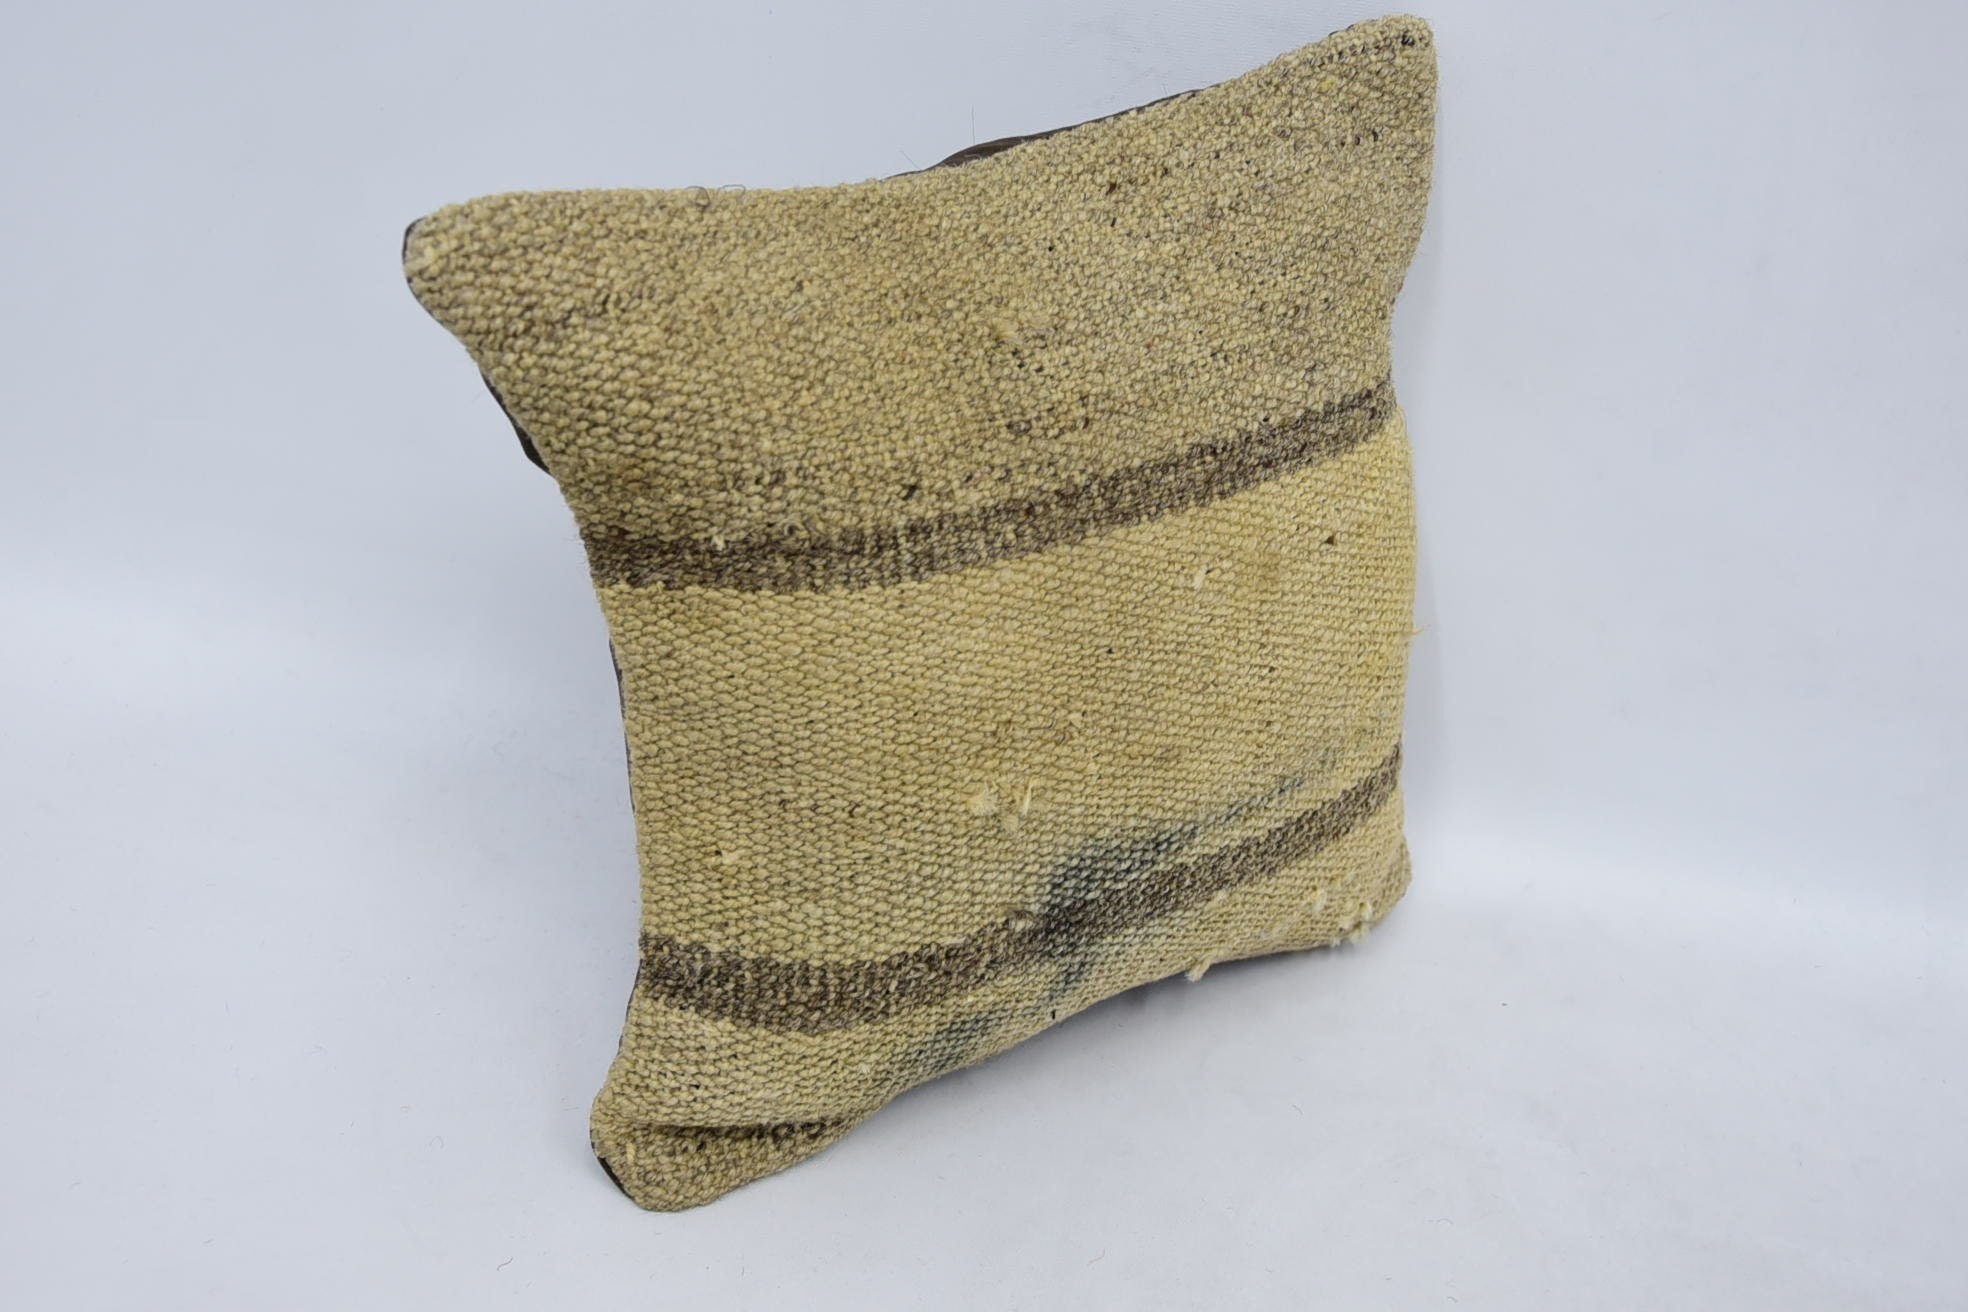 Oriental Cushion, Turkish Pillow, Antique Pillows, Interior Designer Pillow, Bolster Pillow, 12"x12" Beige Pillow